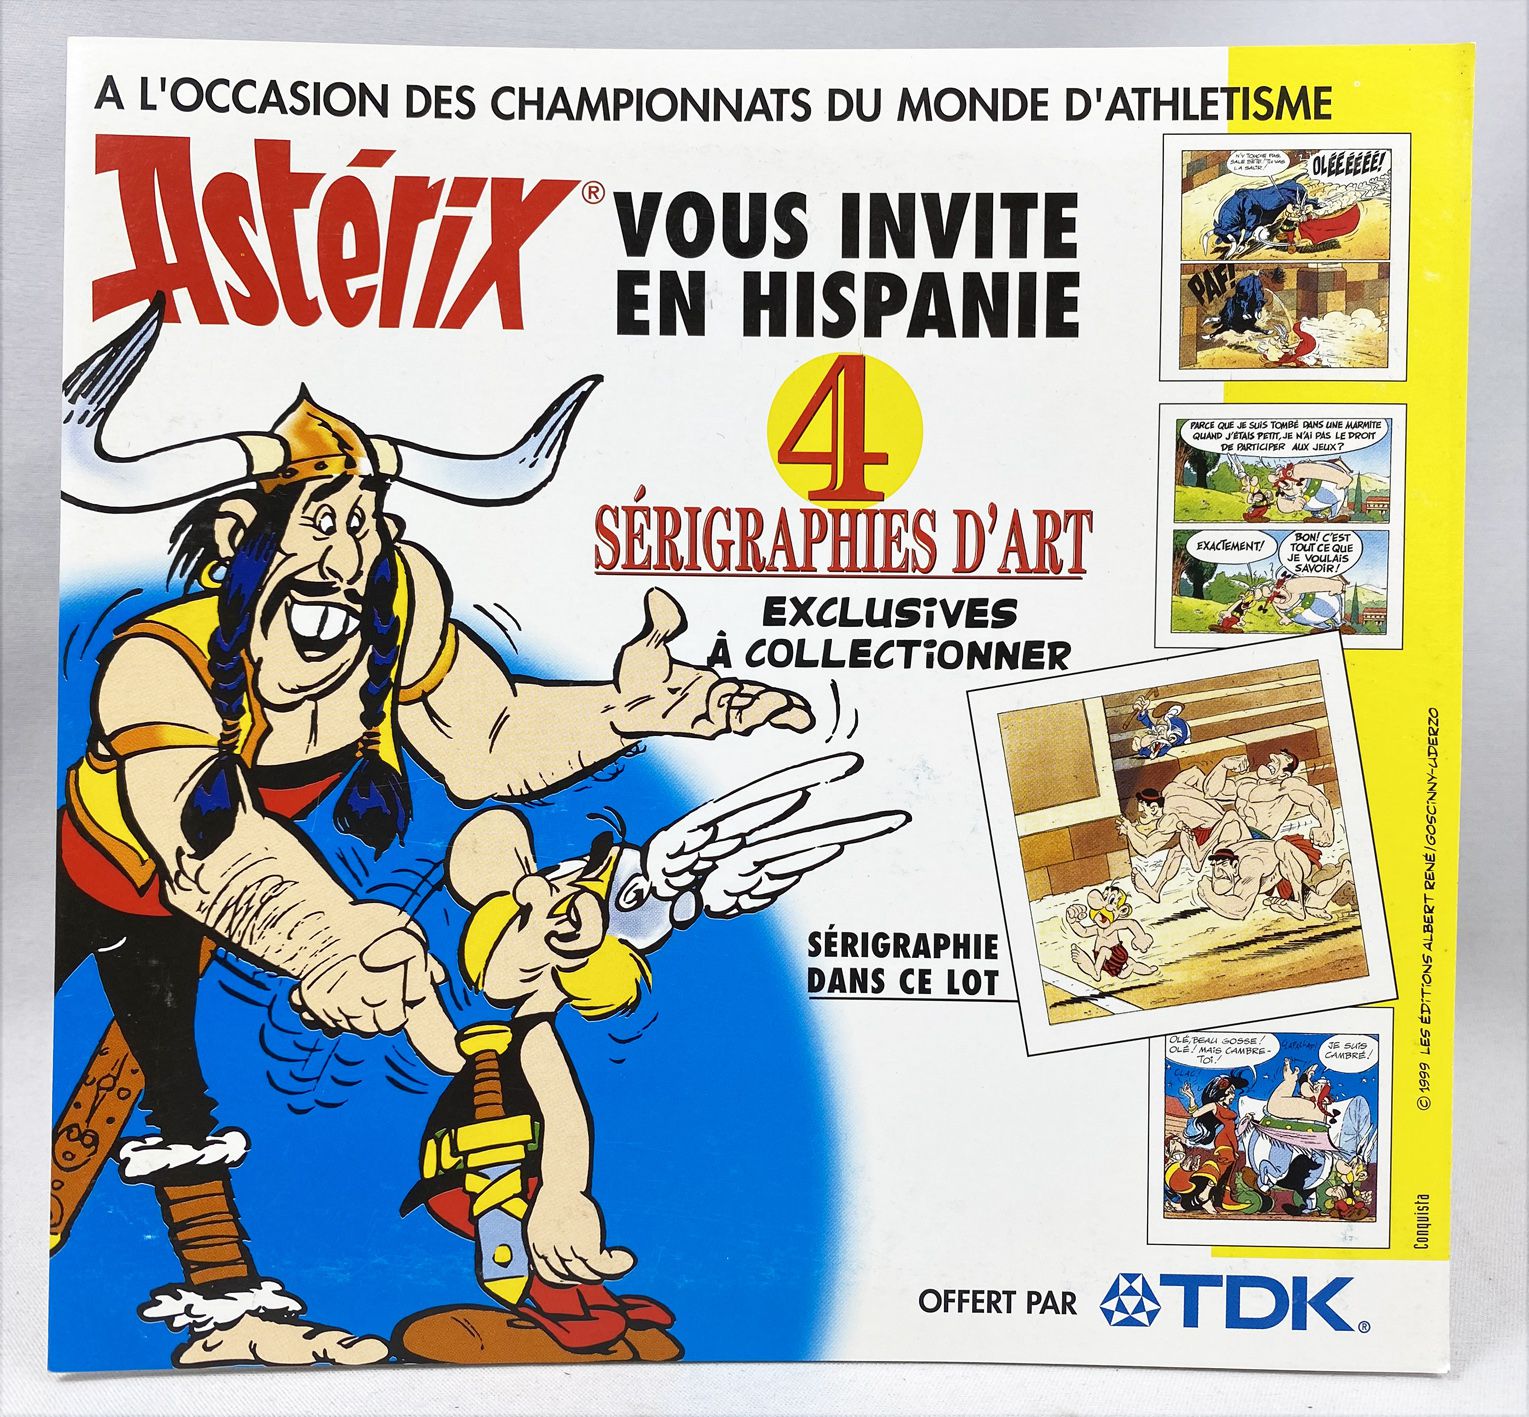 1999 Asterix 